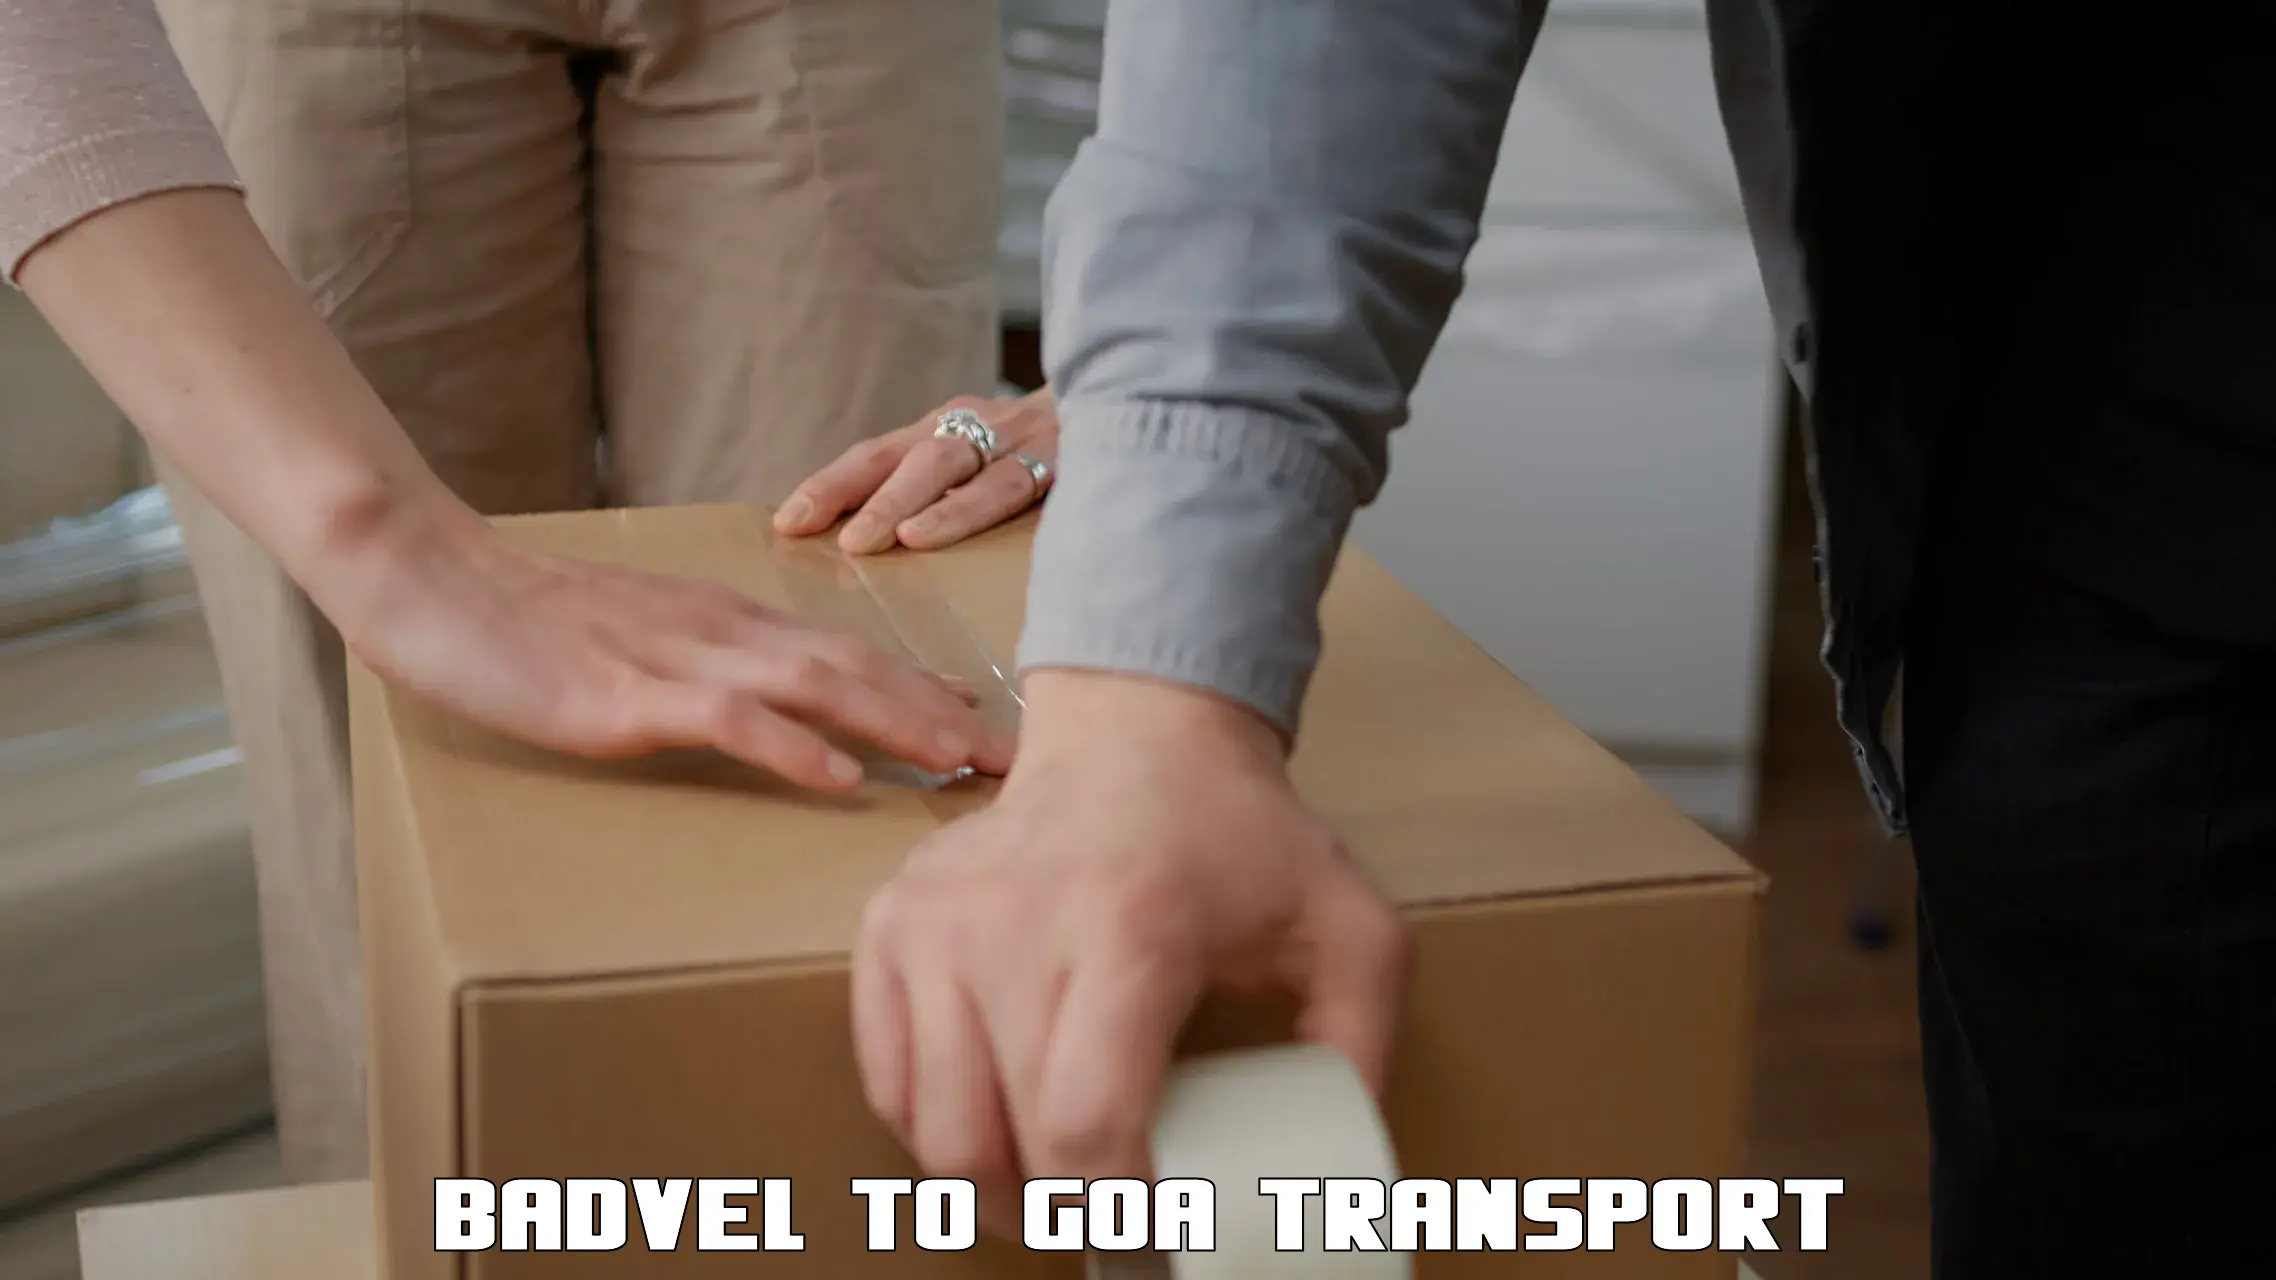 Interstate goods transport Badvel to Mormugao Port